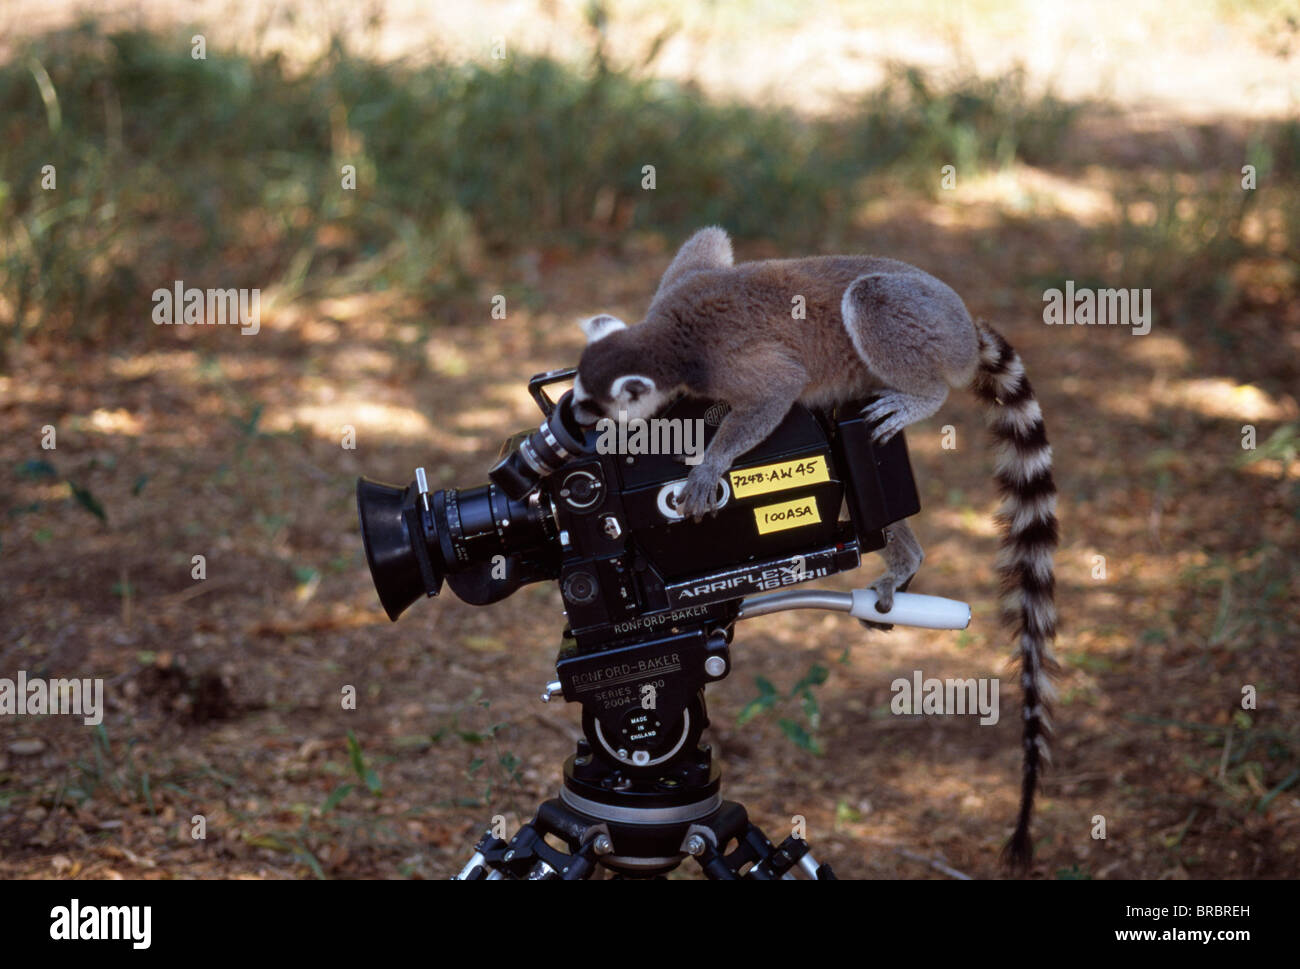 Untitled Document (Lemur catta) sur le tournage de l'appareil photo, Bryanston, sud de Madagascar Banque D'Images